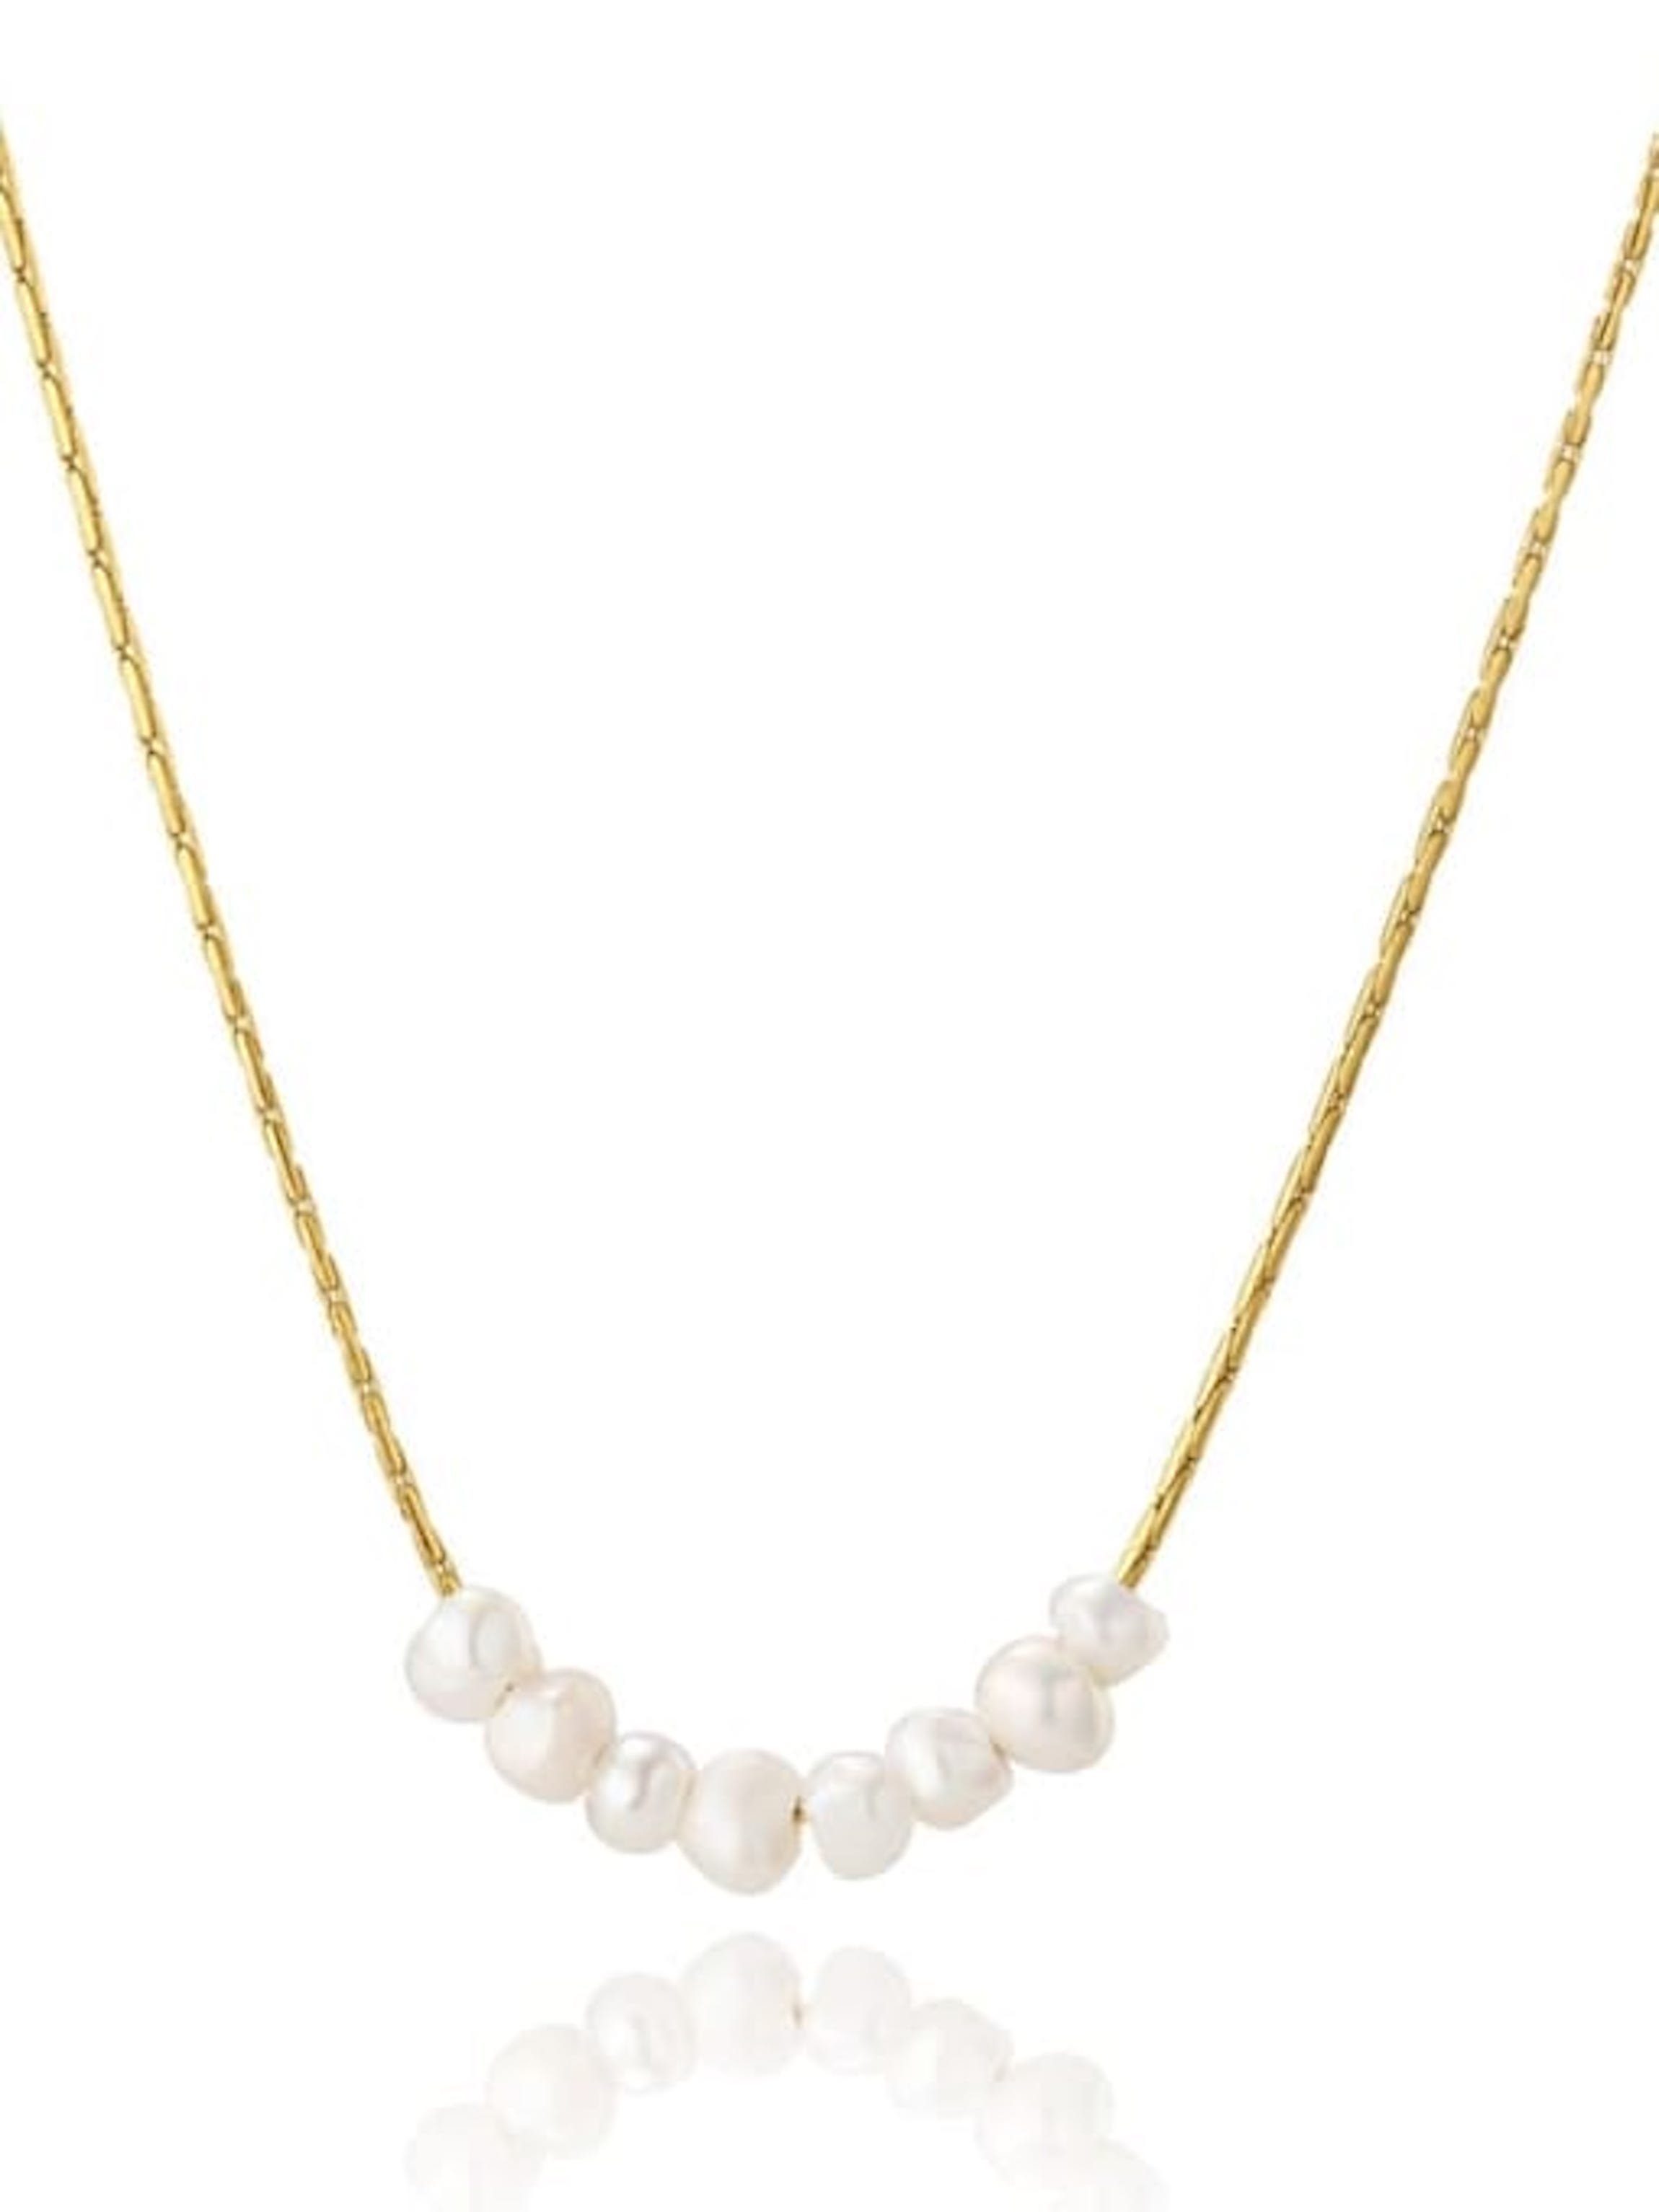 Süßwasserperlen mit Halskette Hochzeit, Süßwasserperlen Perlenkette Brautkrone kleine Perlenhalskette Edelstahl, 8